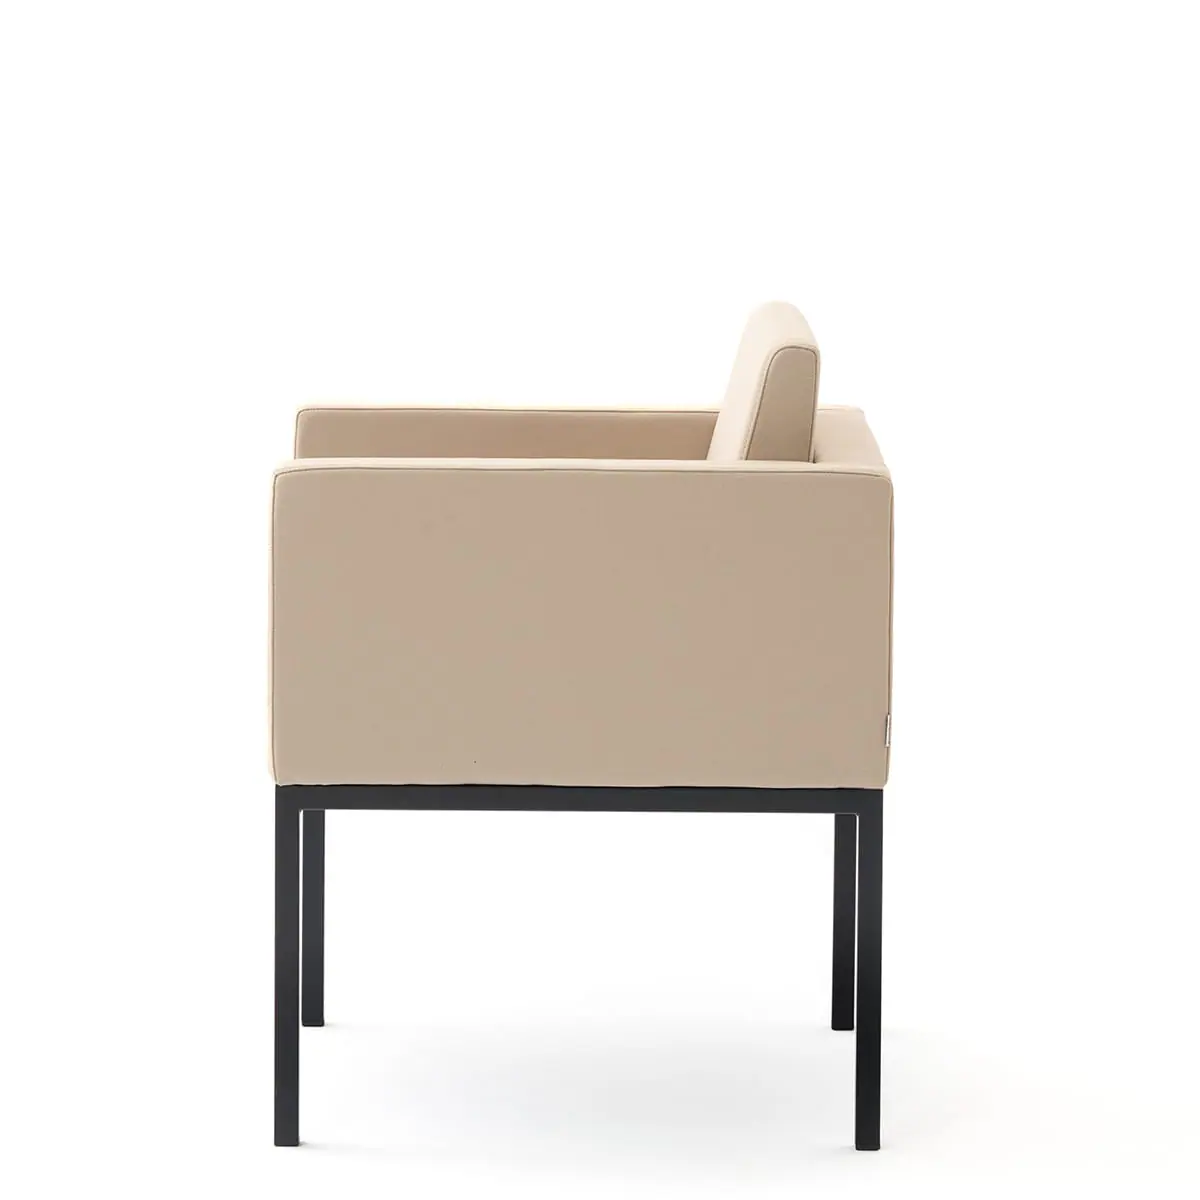 delaoliva-cubik-soft-lounge-seating-004